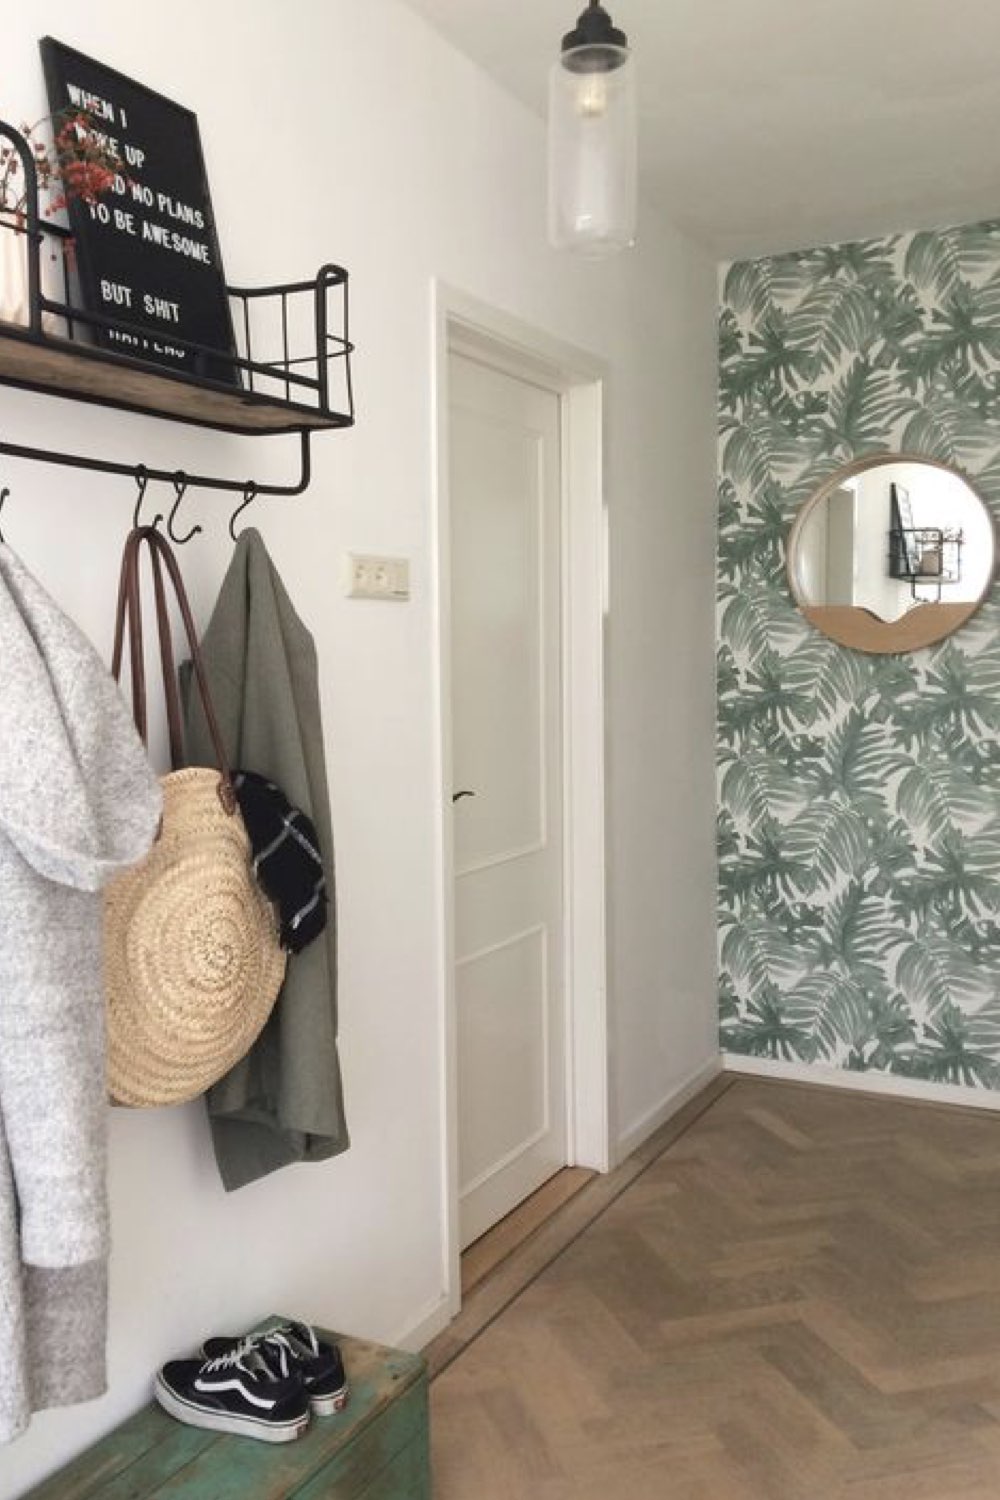 decoration petite entree accueillante couloir appartement mur accent papier peint tropical vert étagère murale avec système pour suspendre les manteaux pratique moderne